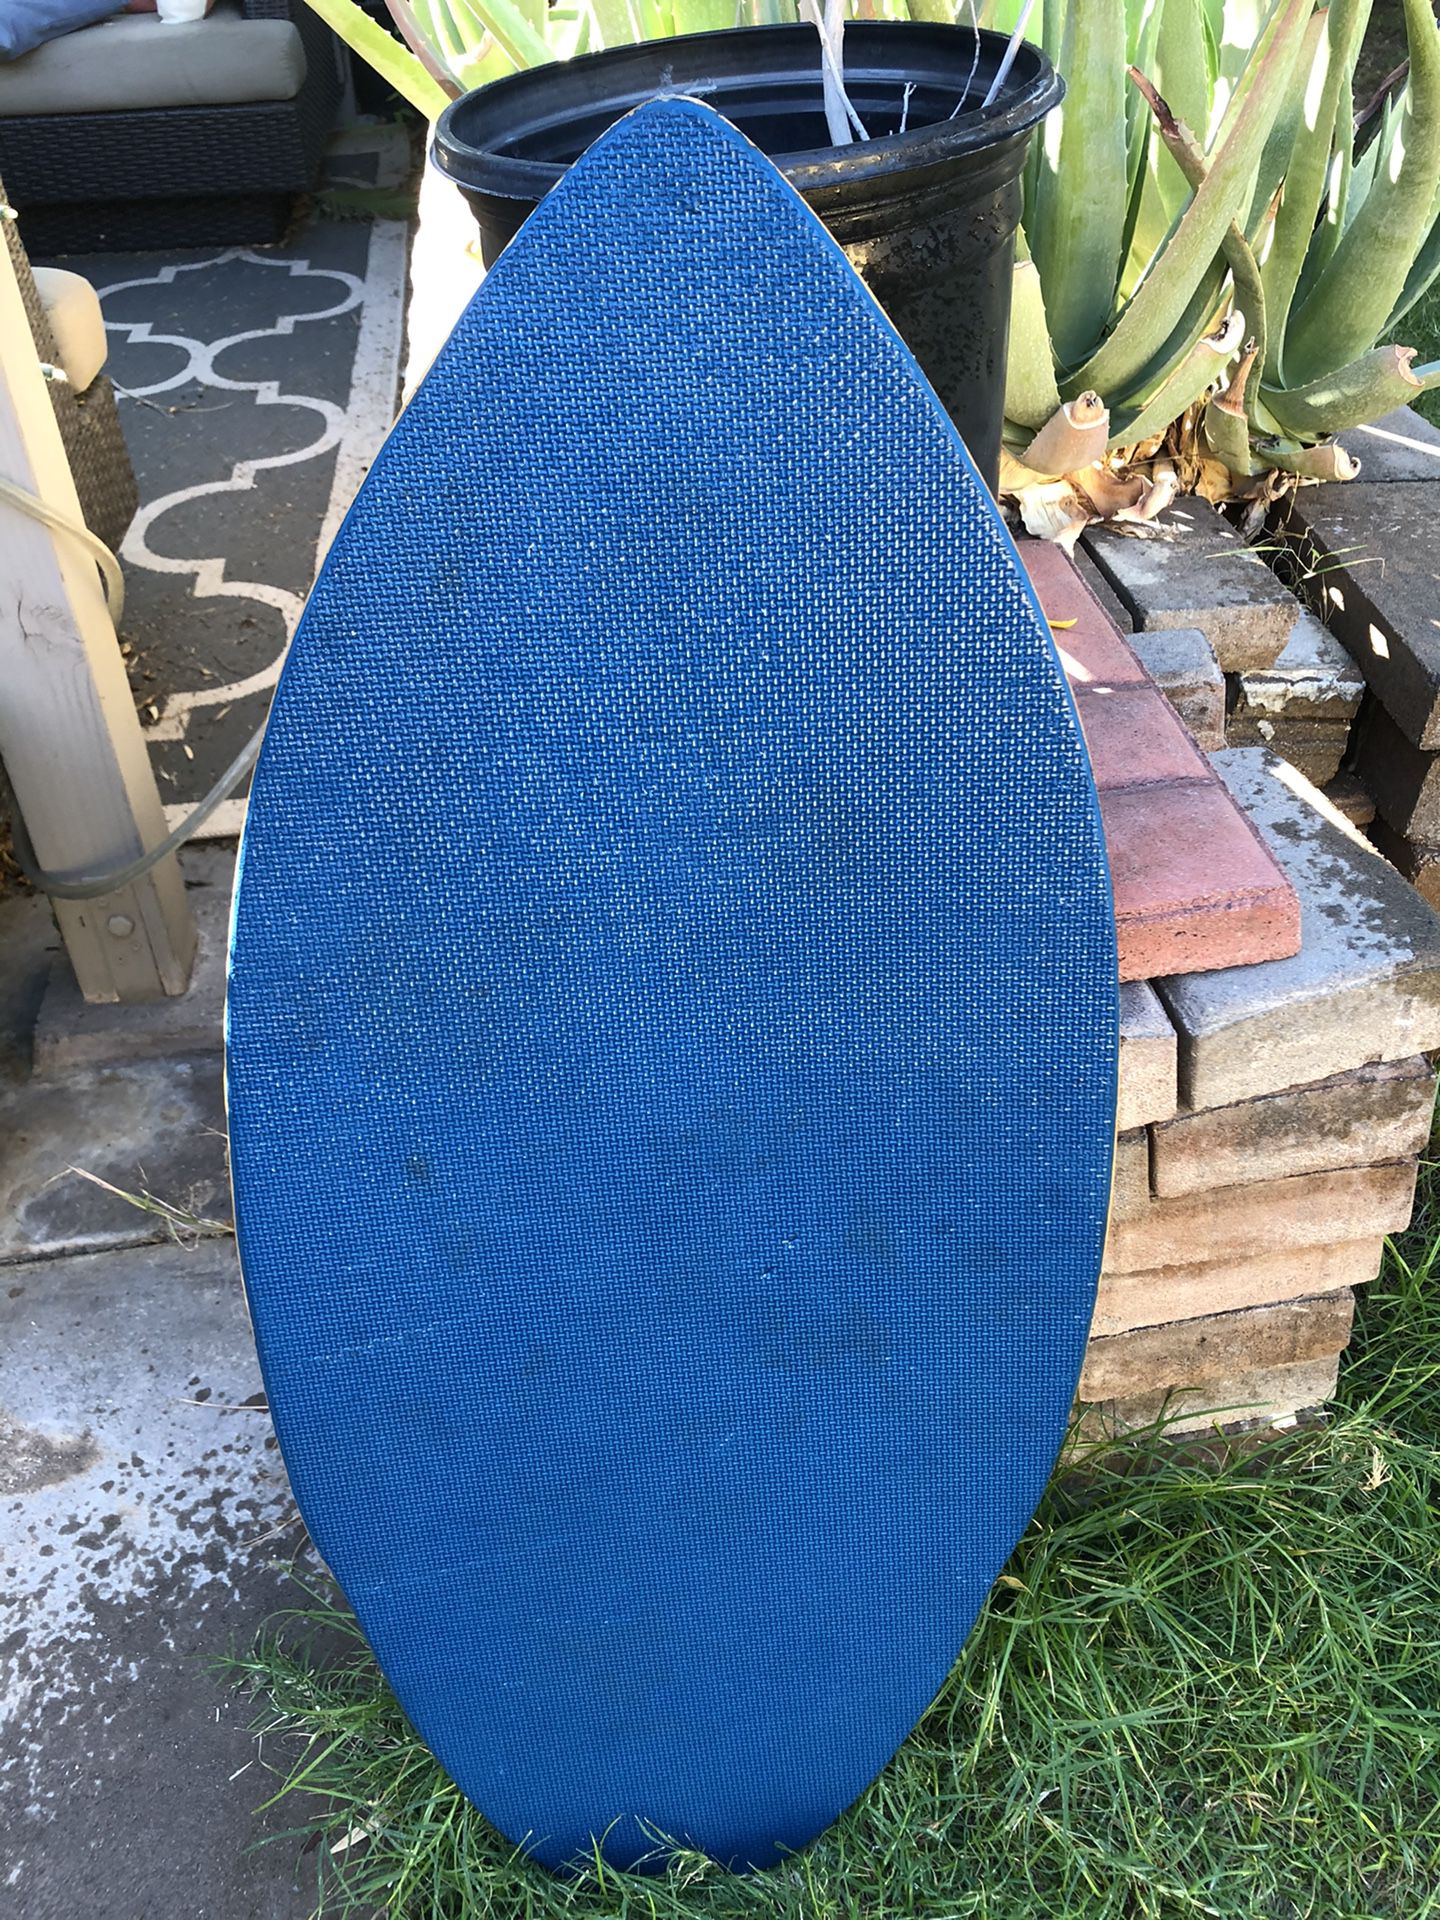 Boogieboard Skim Board